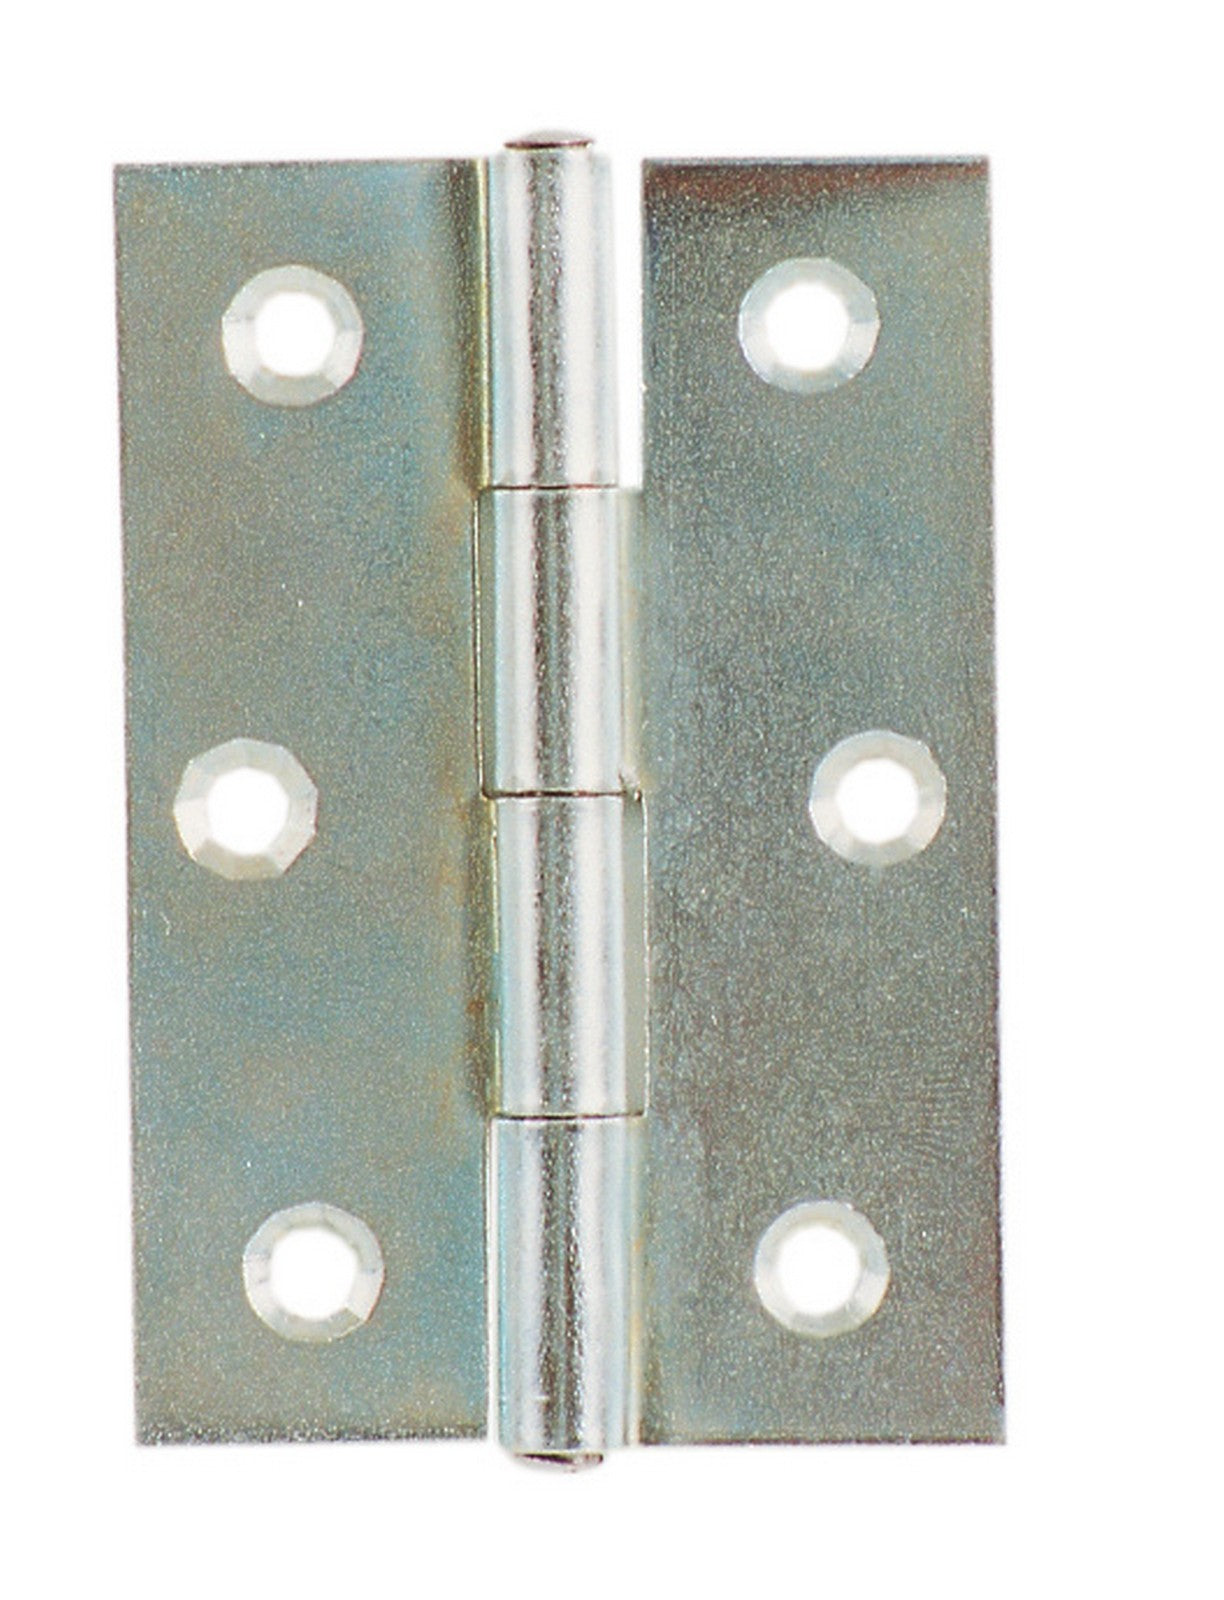 24pz cerniera con perno fisso in acciaio zincato mm 40x35x1,2 art.838 cod:ferx.48762